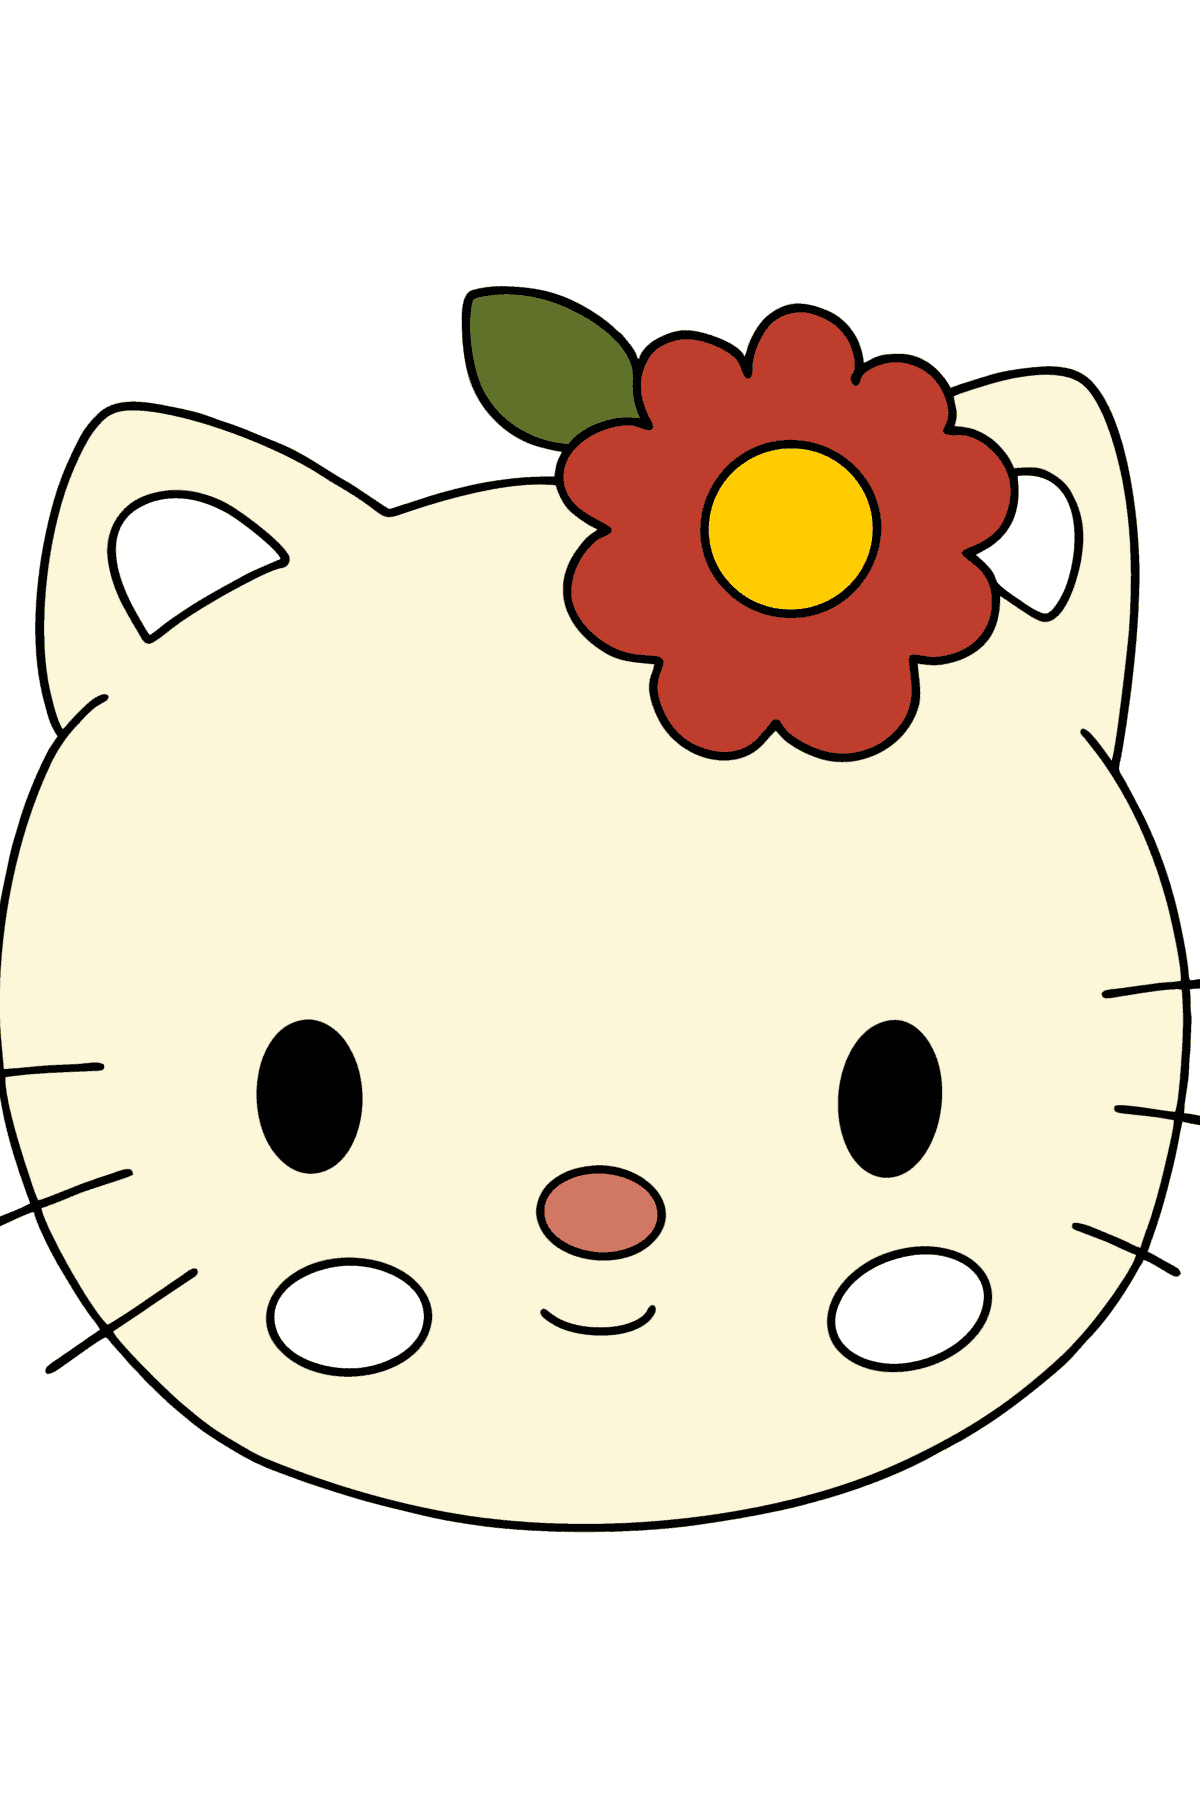 Tegning til fargelegging Hello Kitty snuteparti - Tegninger til fargelegging for barn